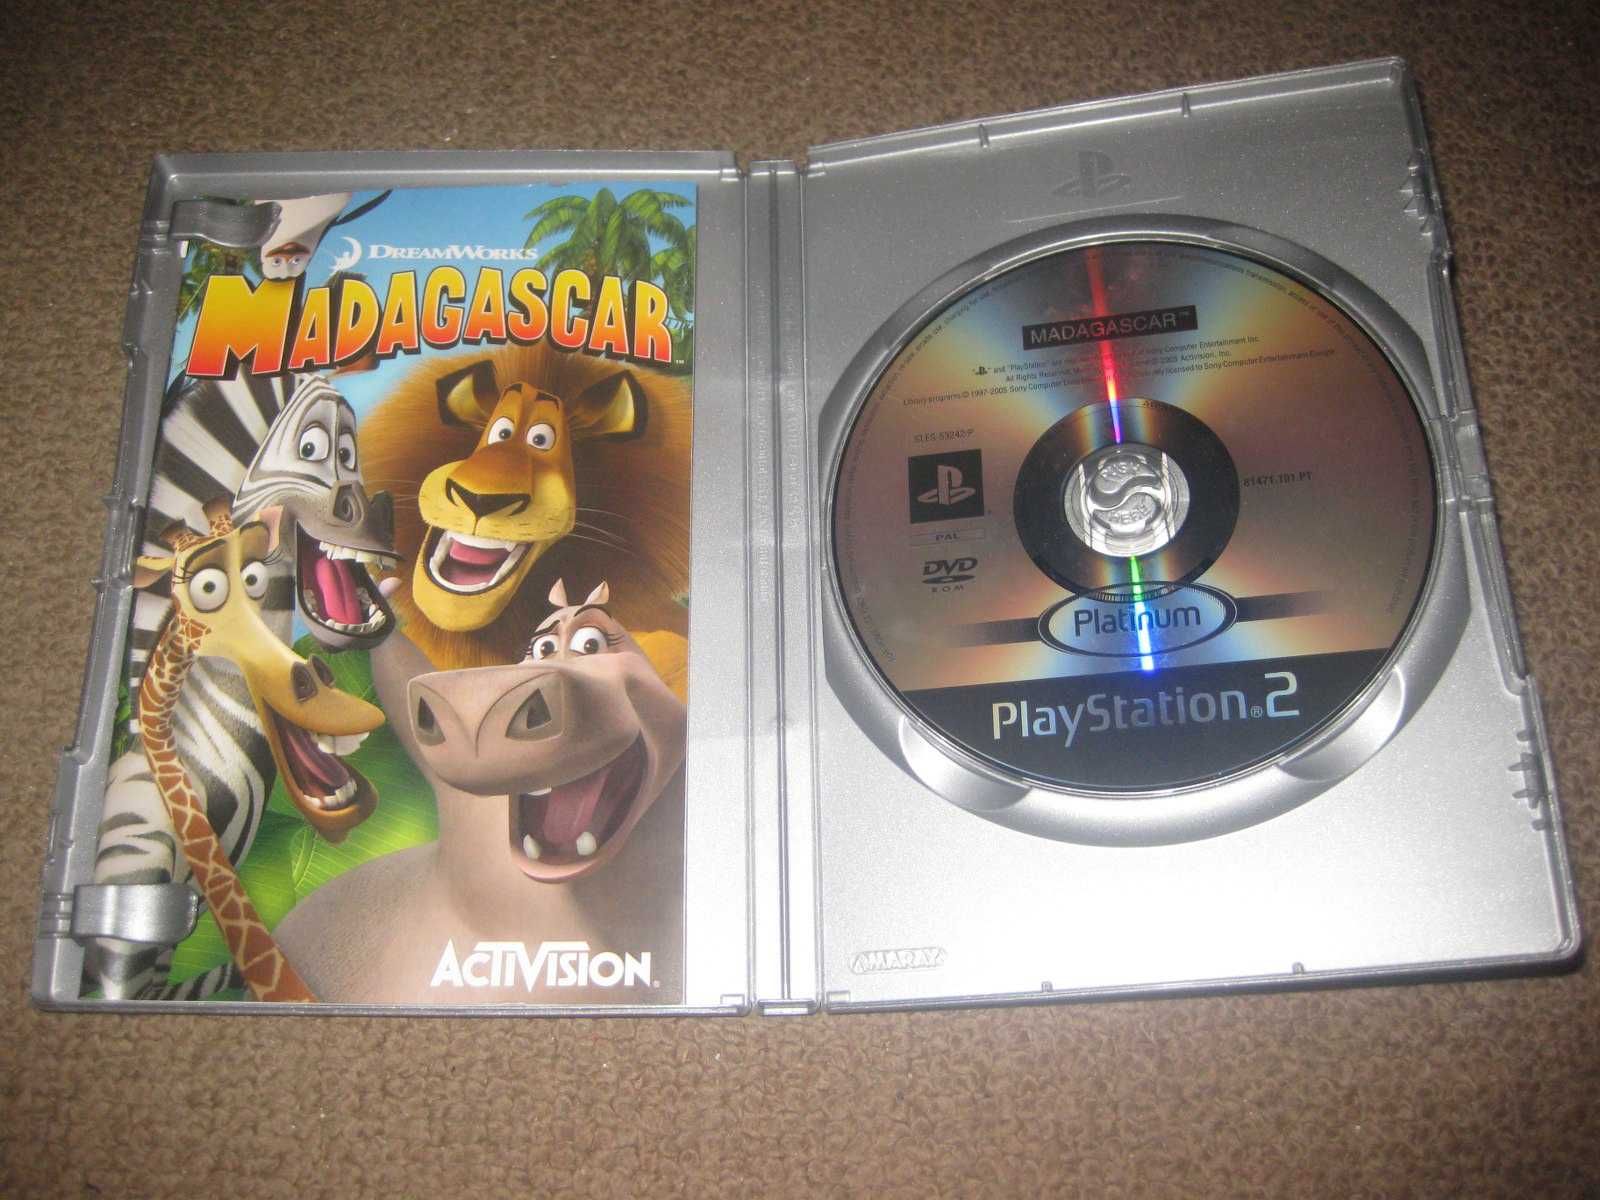 Jogo "Madagascar" para PS2/Completo!